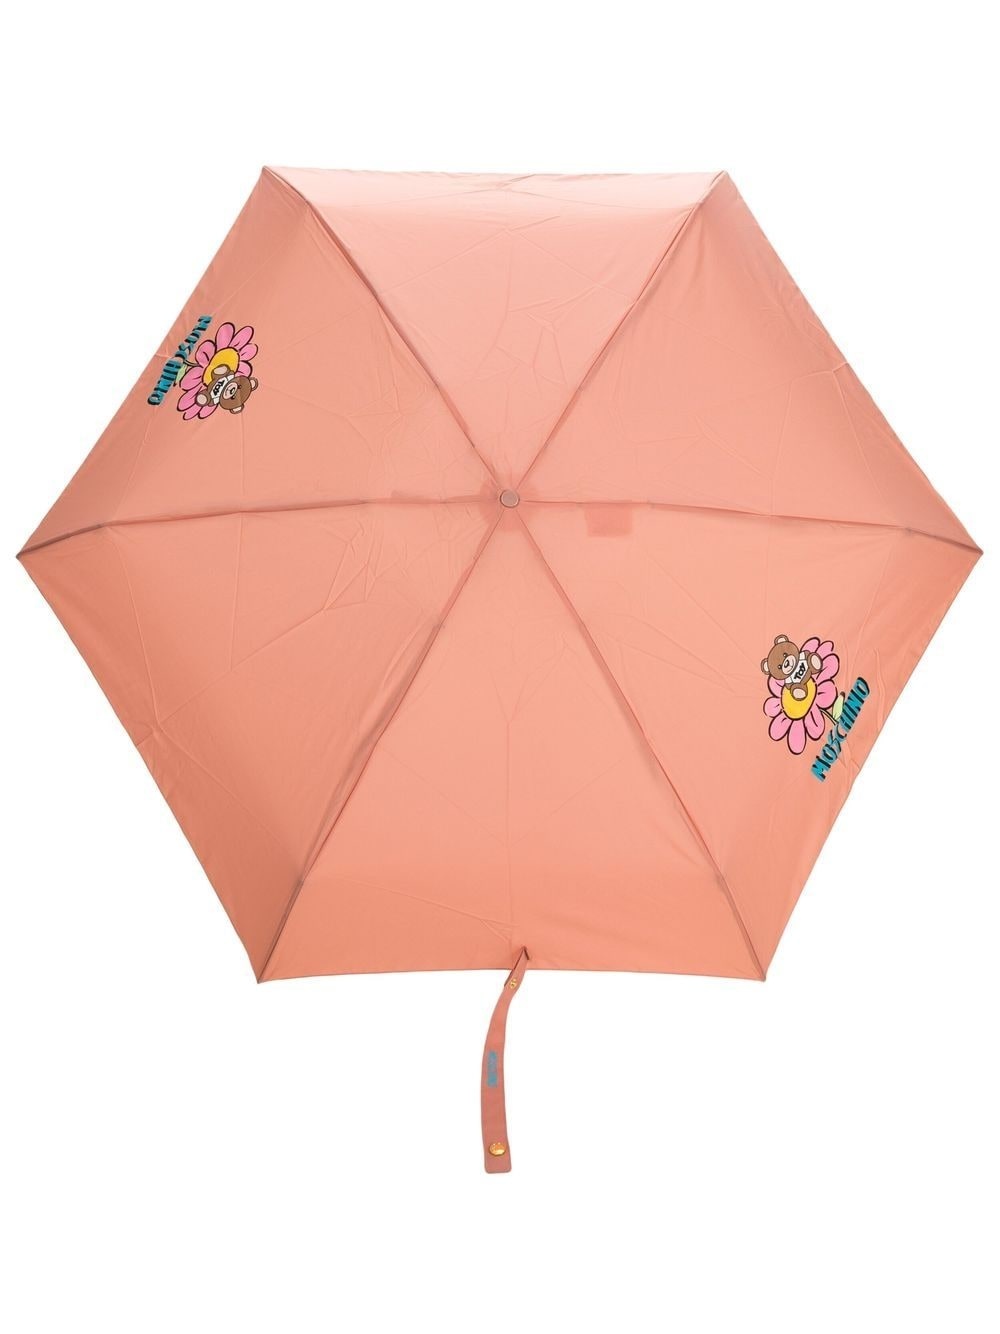 Teddy Bear compact umbrella - 1